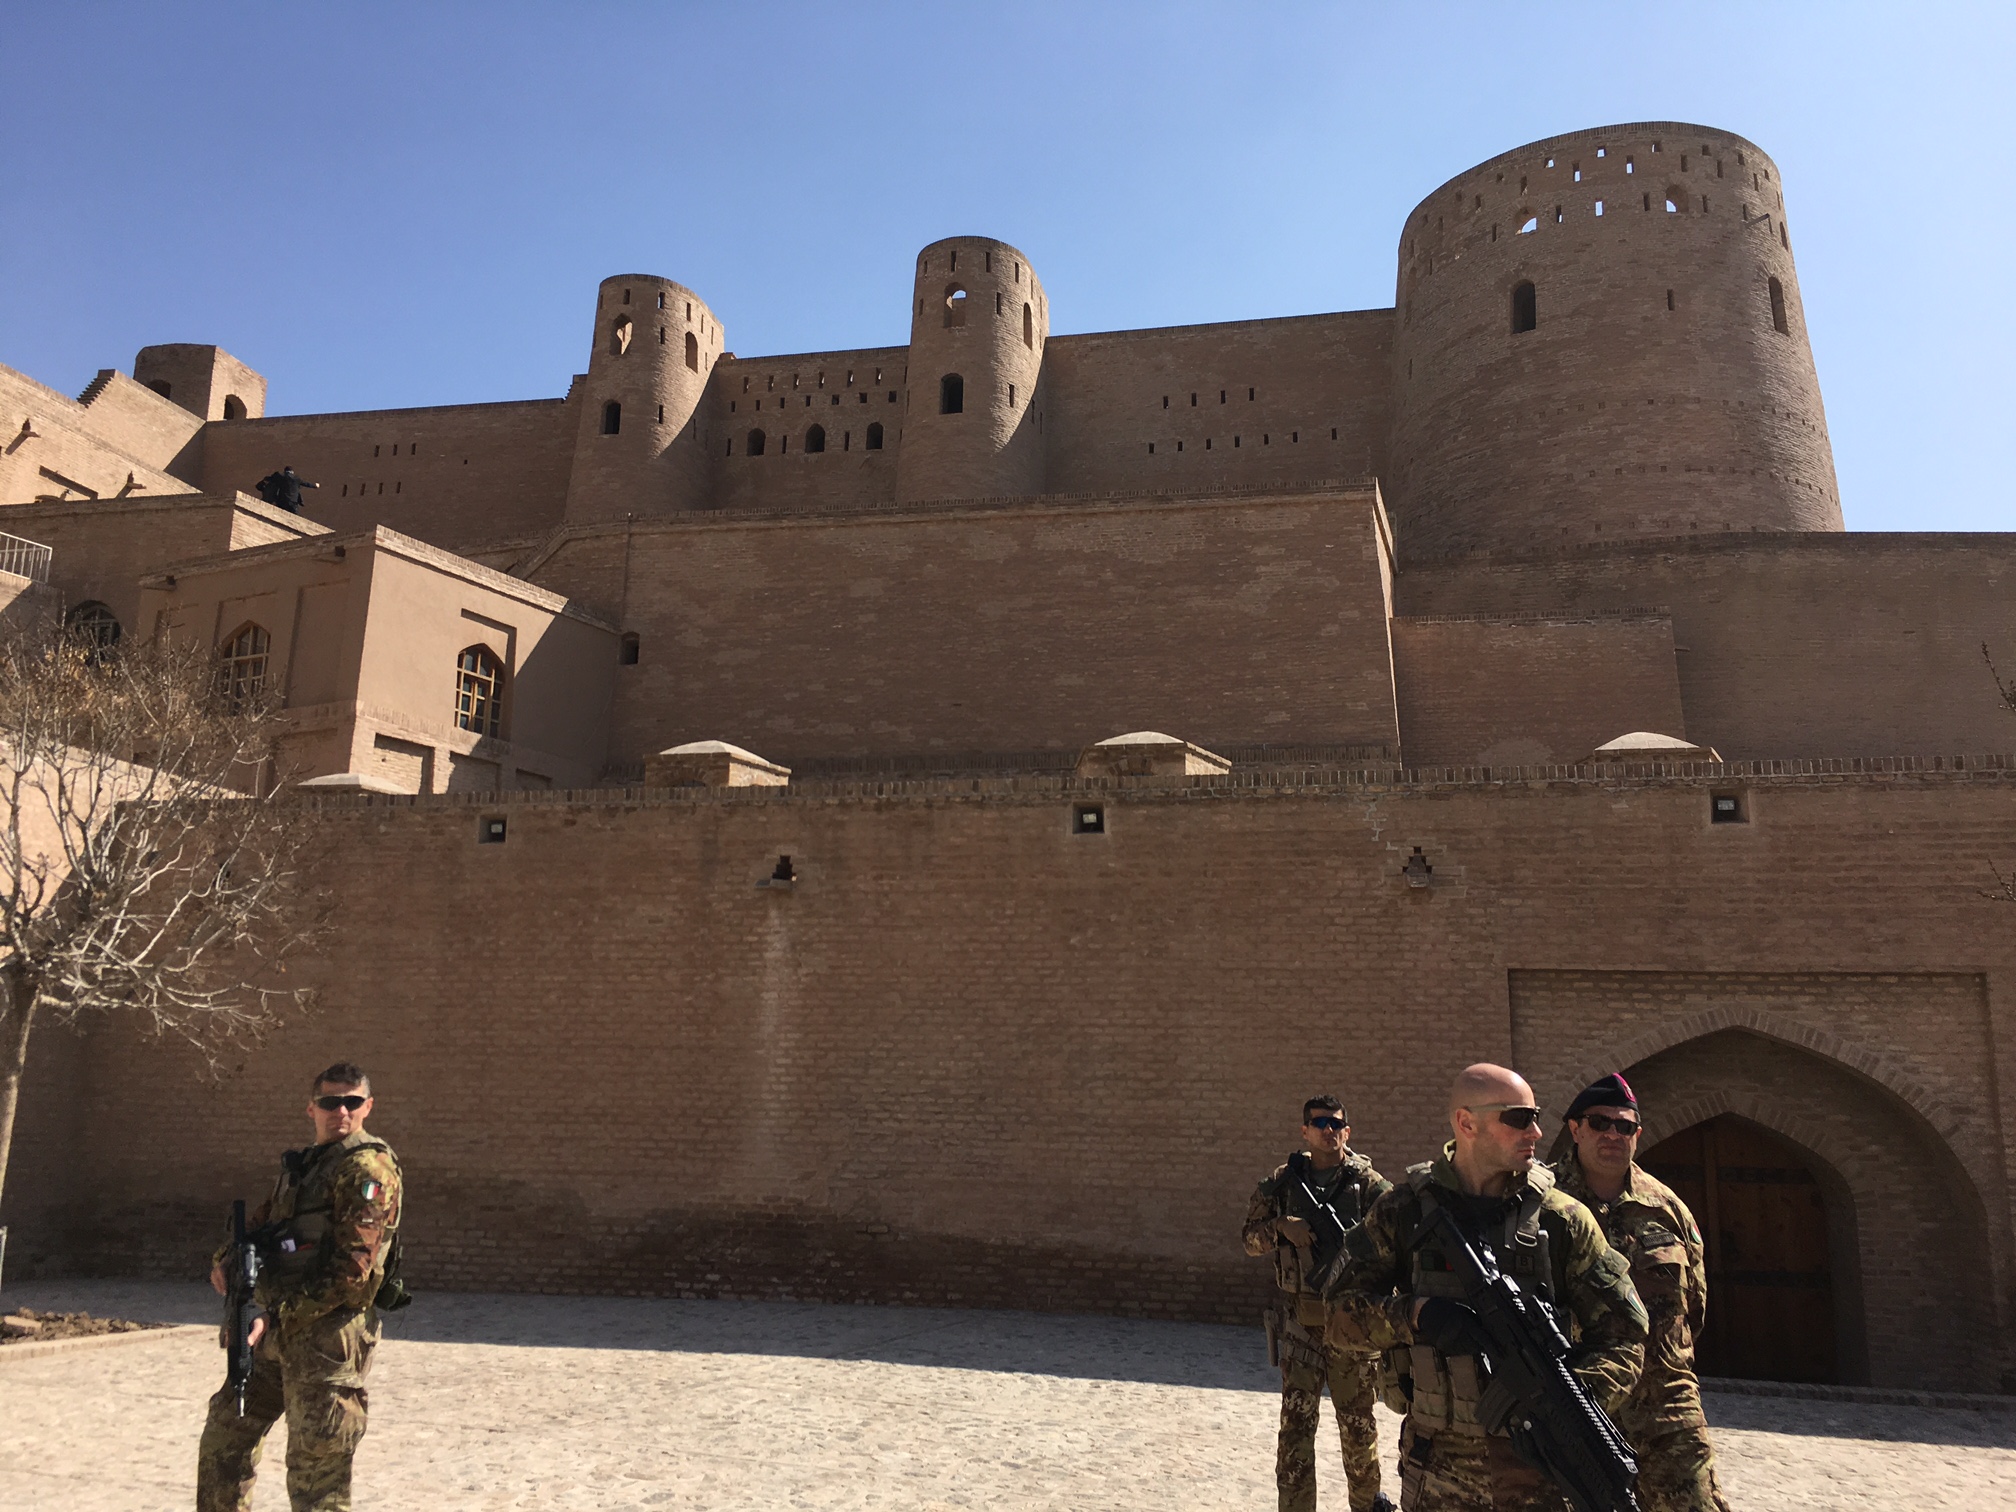 Italian troops took over ancient Citadel in Herat City - 21st ...